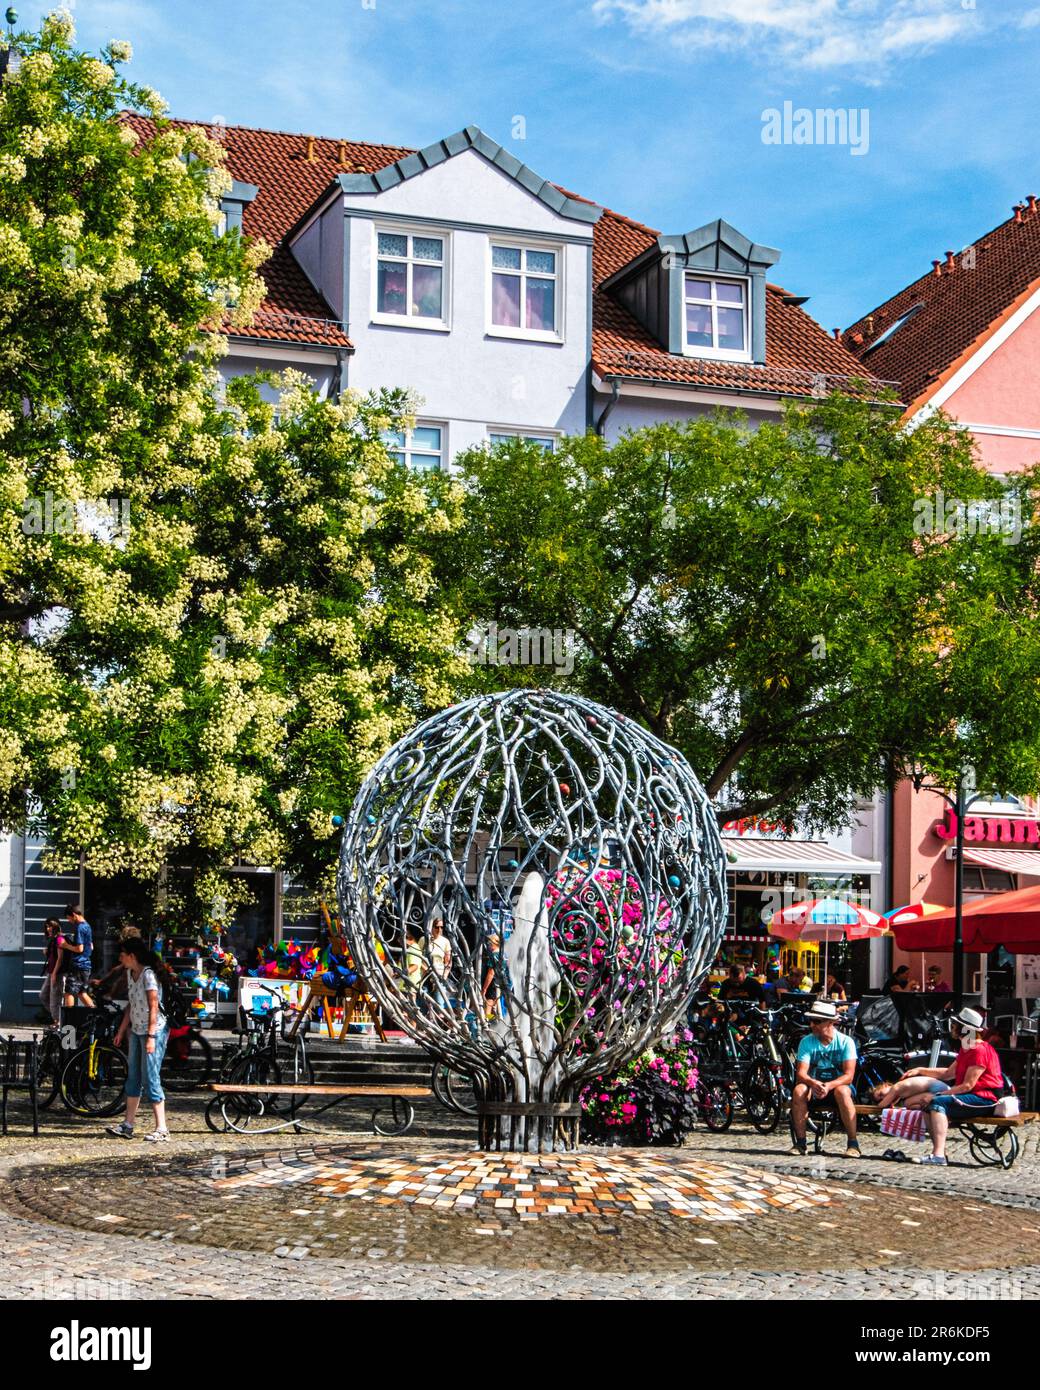 Neue Markt, place du nouveau marché dans la vieille ville historique fontaine et beaux bâtiments classés, Waren (Müritz), Mecklembourg-Poméranie-Occidentale, Allemagne Banque D'Images